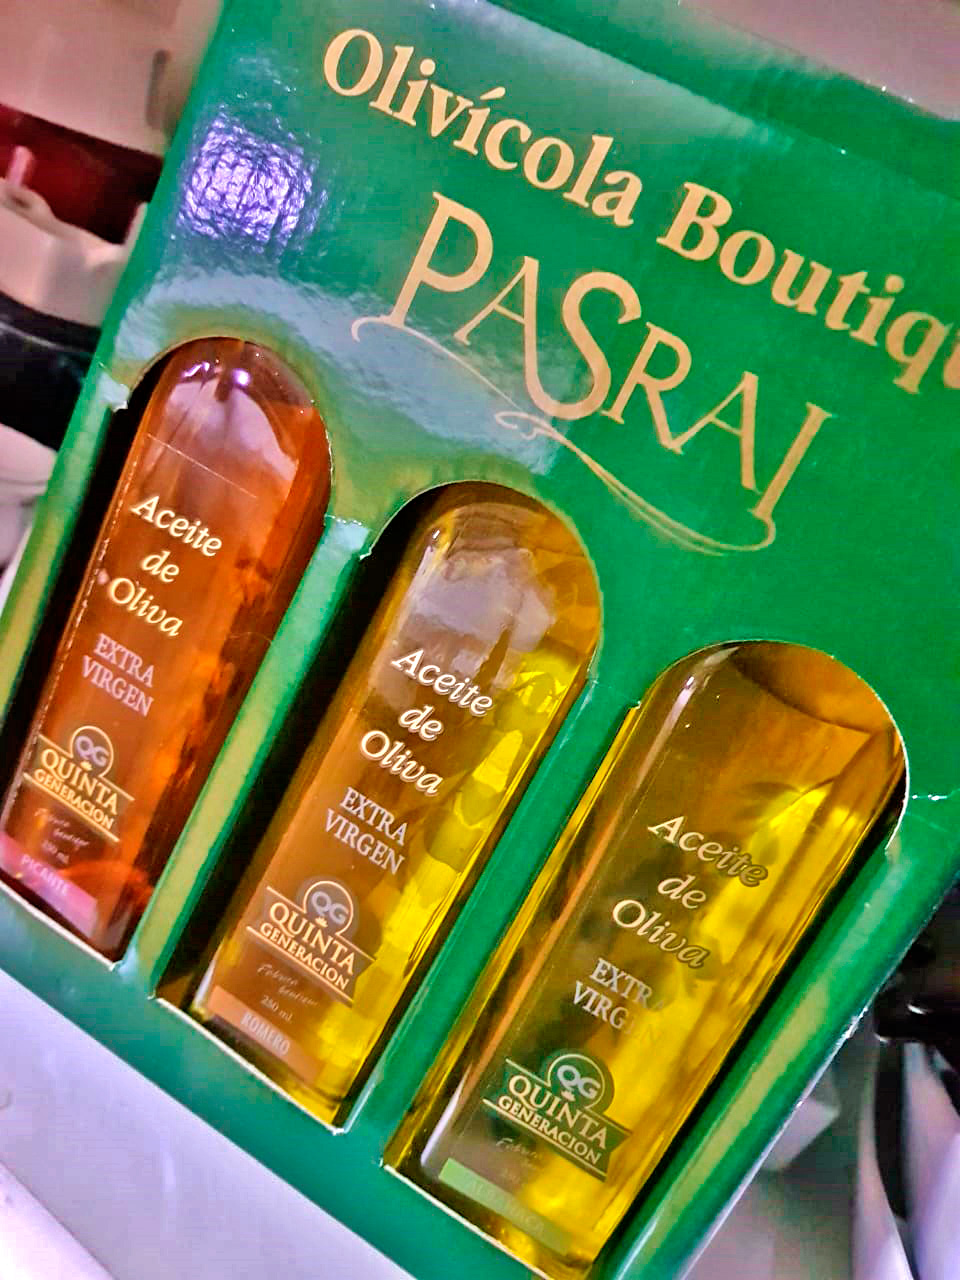 Trio de azeites da Olivícola Boutique Pasrai